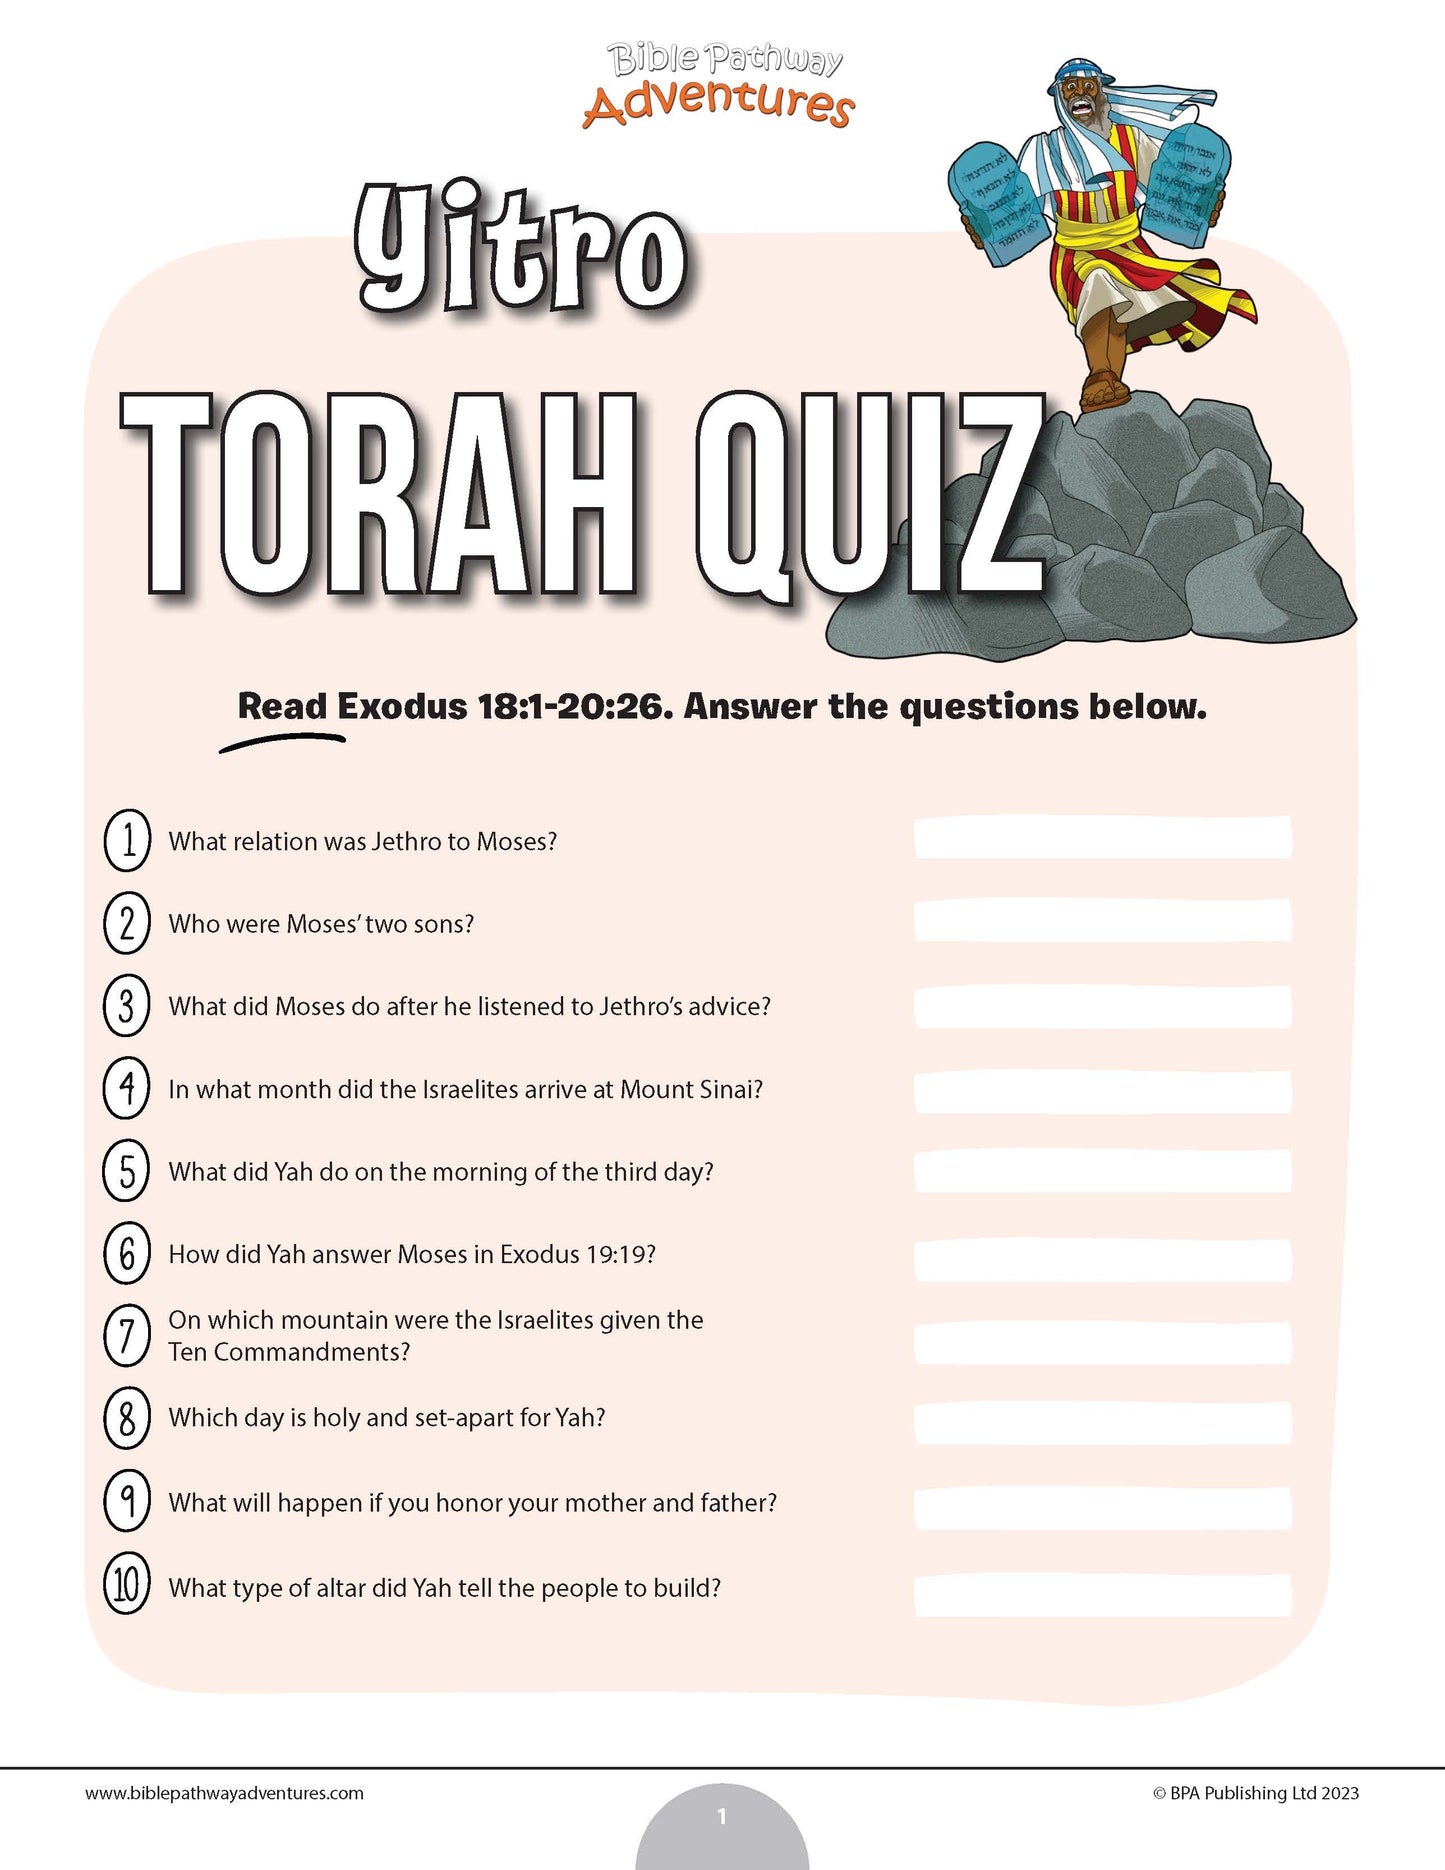 Yitro Torah quiz (PDF)